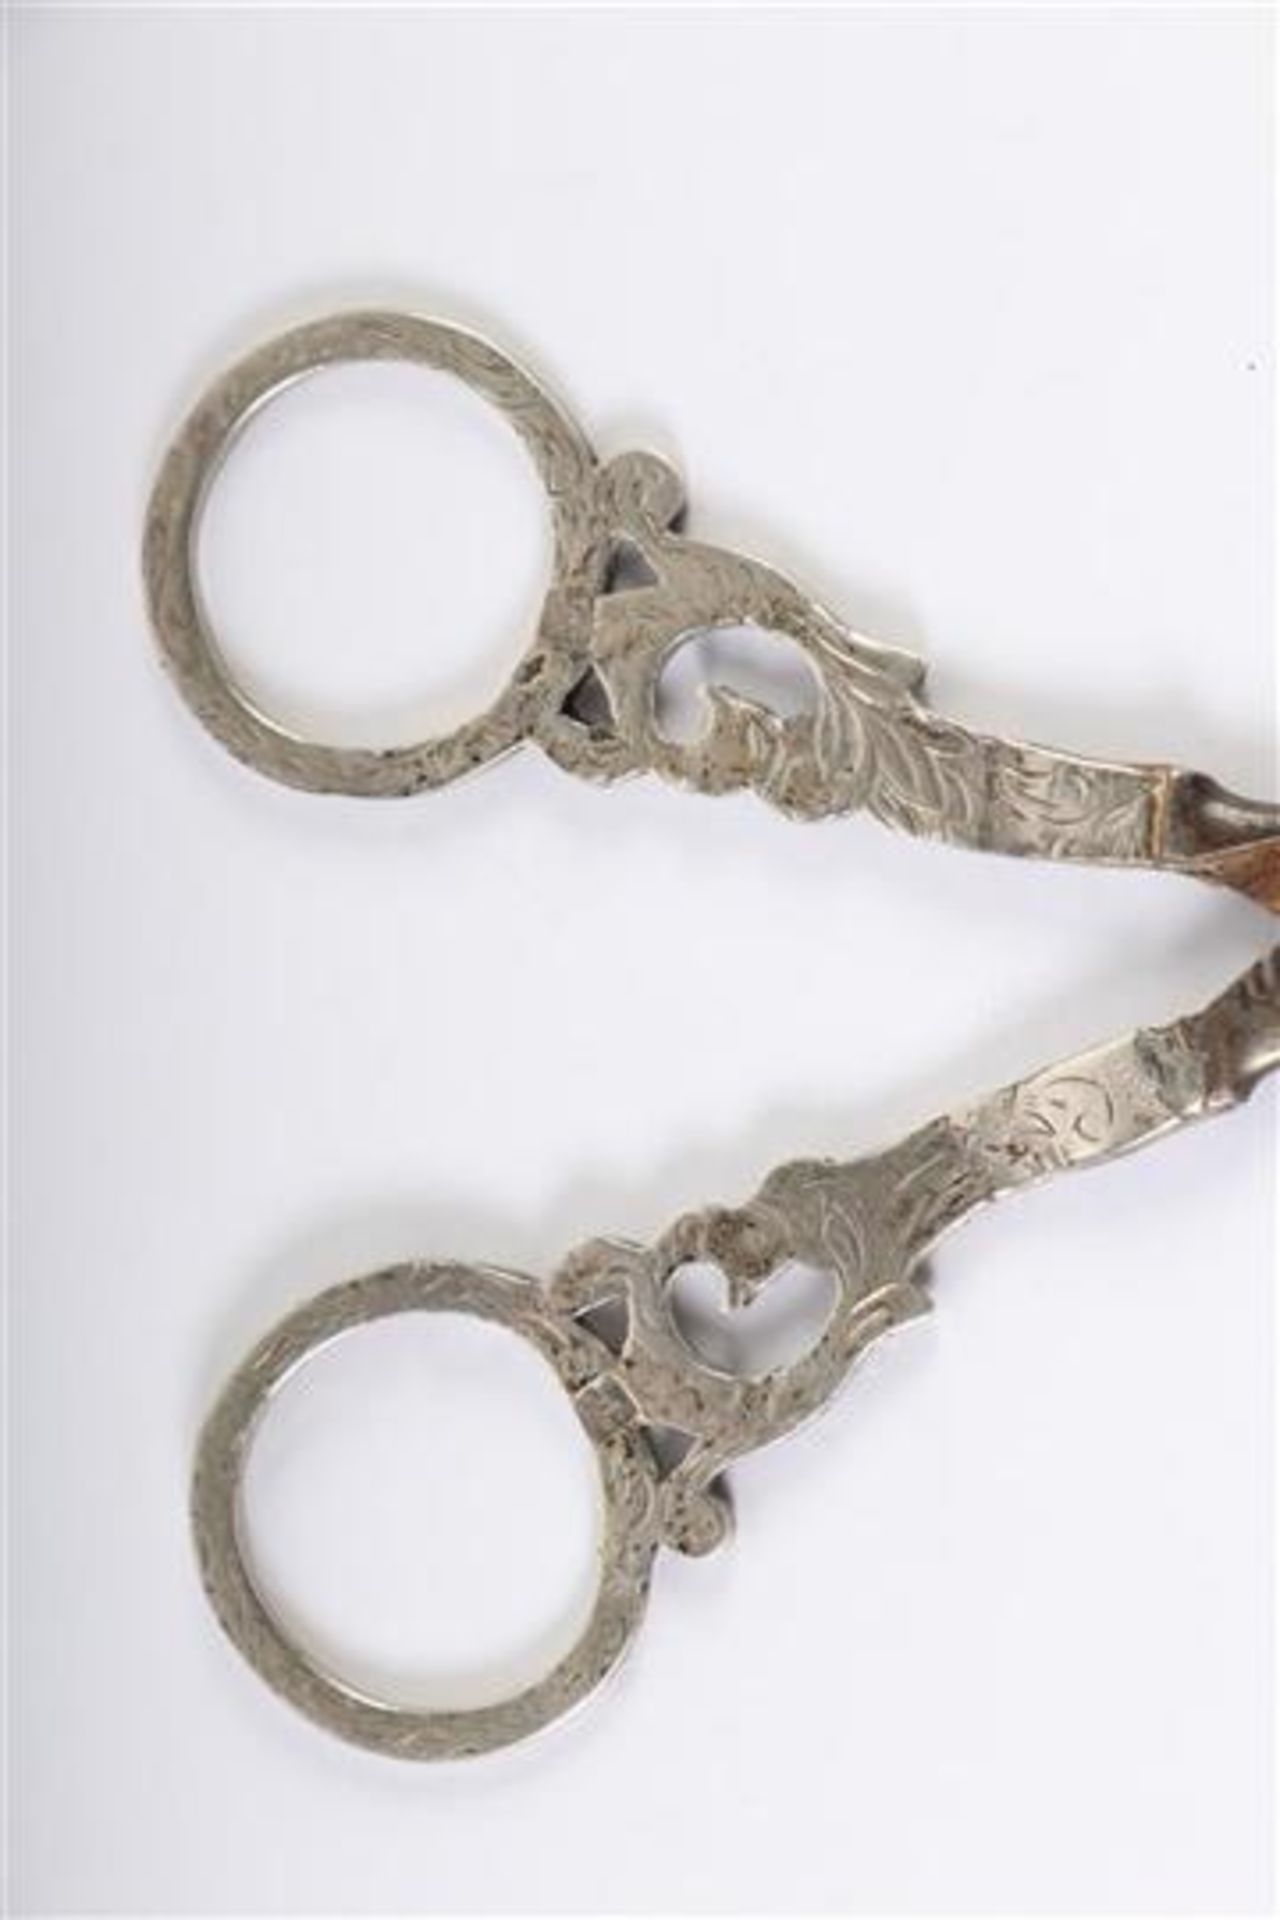 Twee zilveren scharen, Hollands gekeurd. L: 12.5 en 15 cm. - Bild 2 aus 3